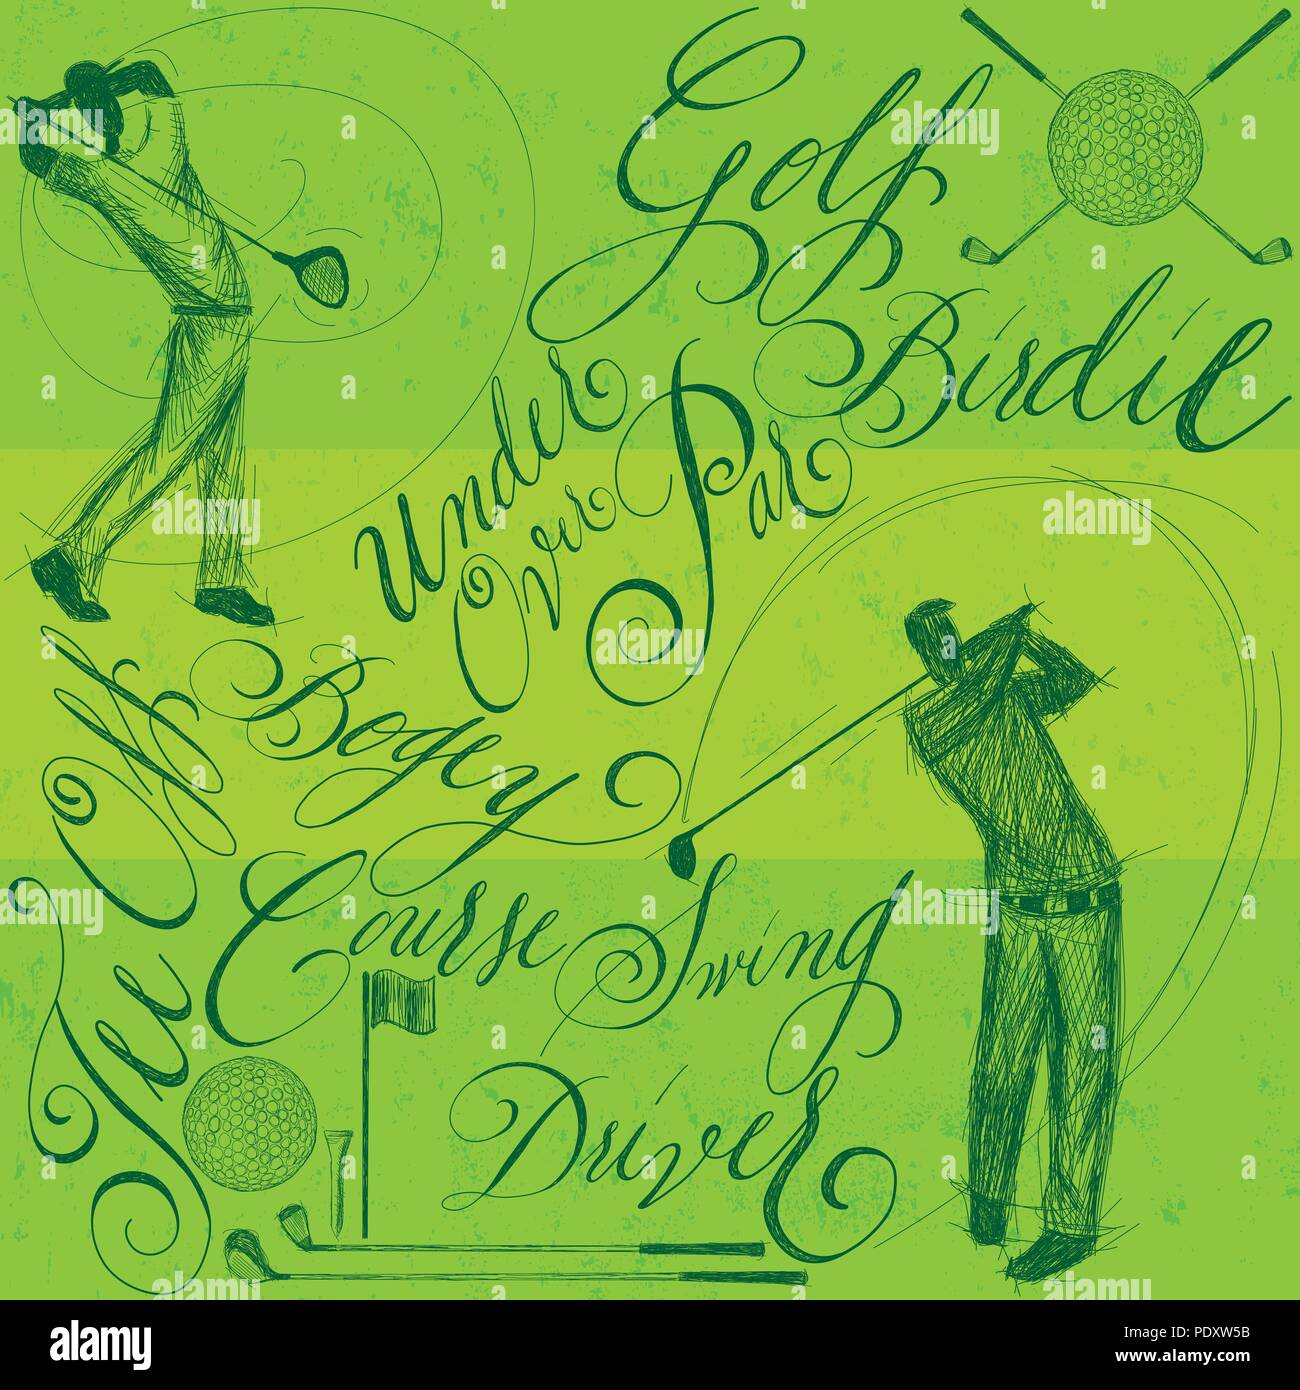 Gli amanti del golf con la calligrafia. Sketchy golfisti driver oscillante lungo con altri golf doodle elementi e calligrafia manoscritta. Illustrazione Vettoriale